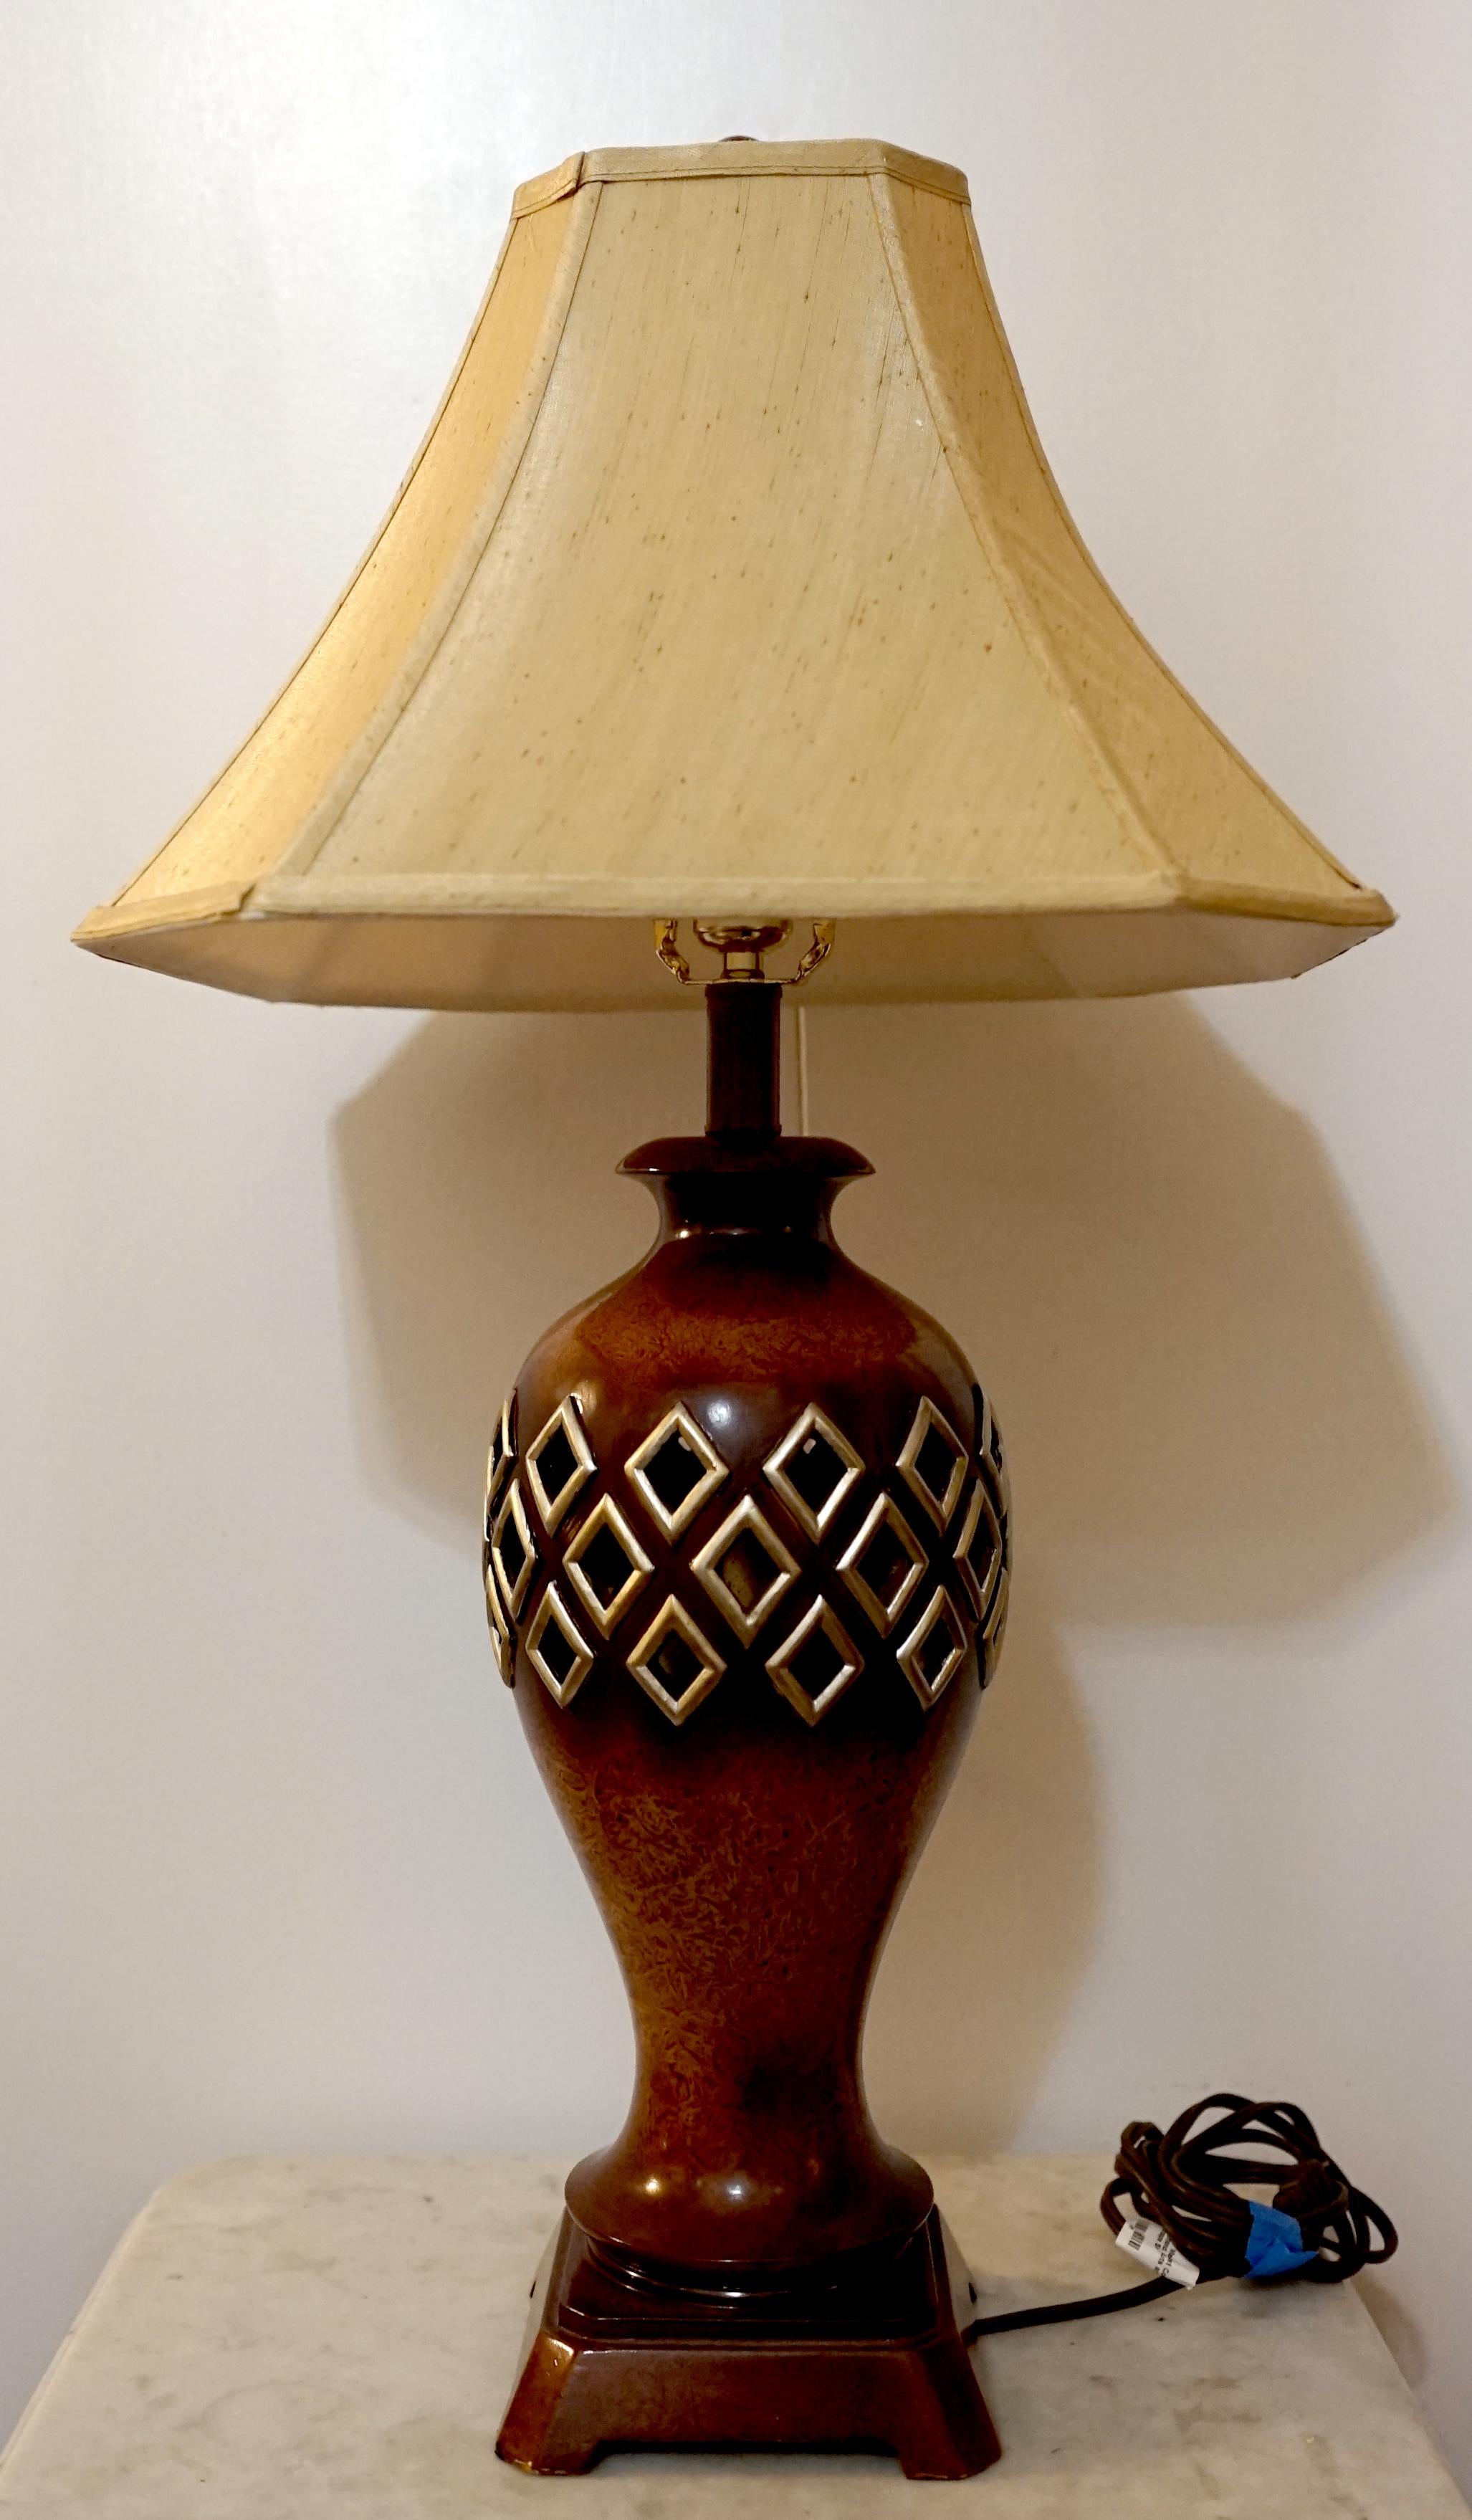 Diese Lampe ist ein Vintage Regency-Stil durchbohrt Noppenholz, Baluster Tischlampe
aus der zweiten Hälfte des 20. Jahrhunderts. Schöne Holzmaserung und Patina. Das auffälligste Merkmal sind die diamantförmigen Aussparungen, die mit